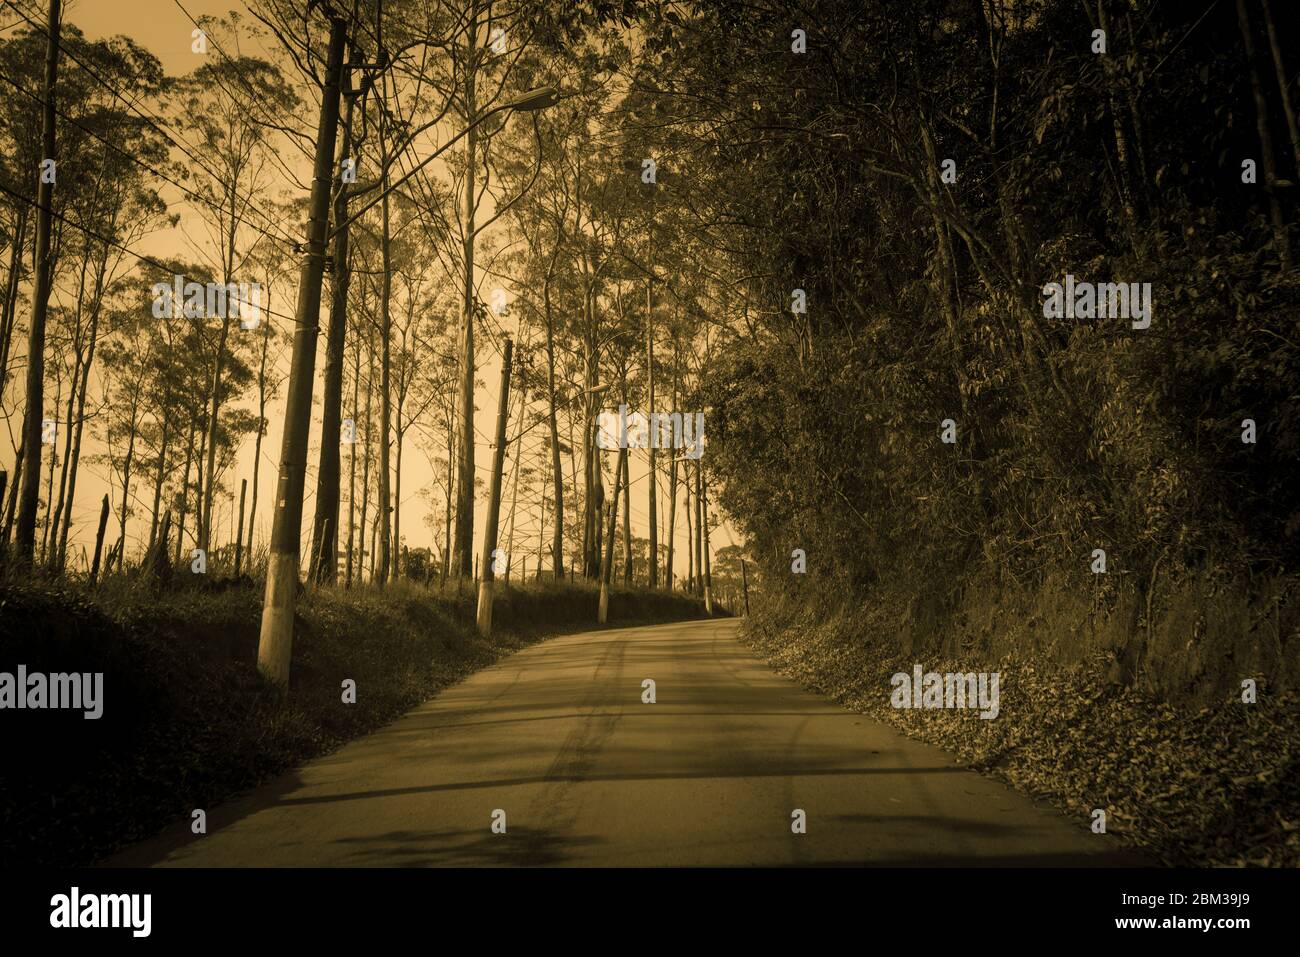 Guida sulla strada circondata da alberi, in tonalità seppia. Immagine per l'uso in background. Foto Stock